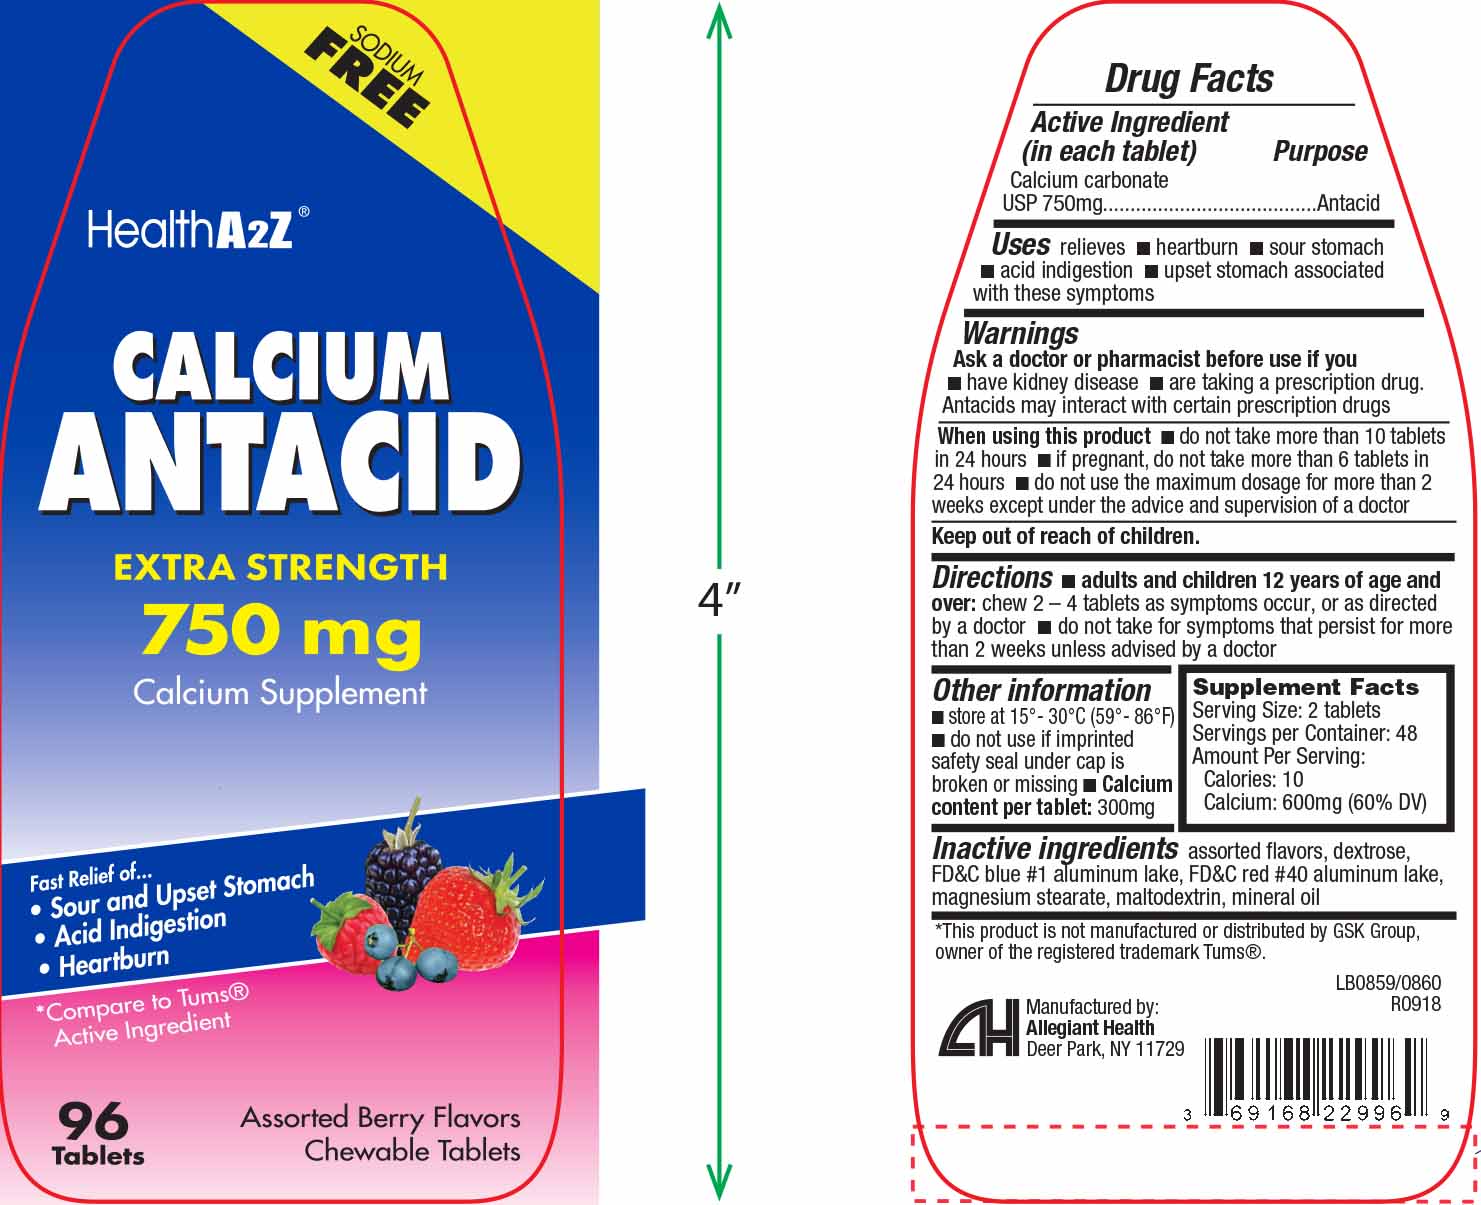 Calcium Antacid 750